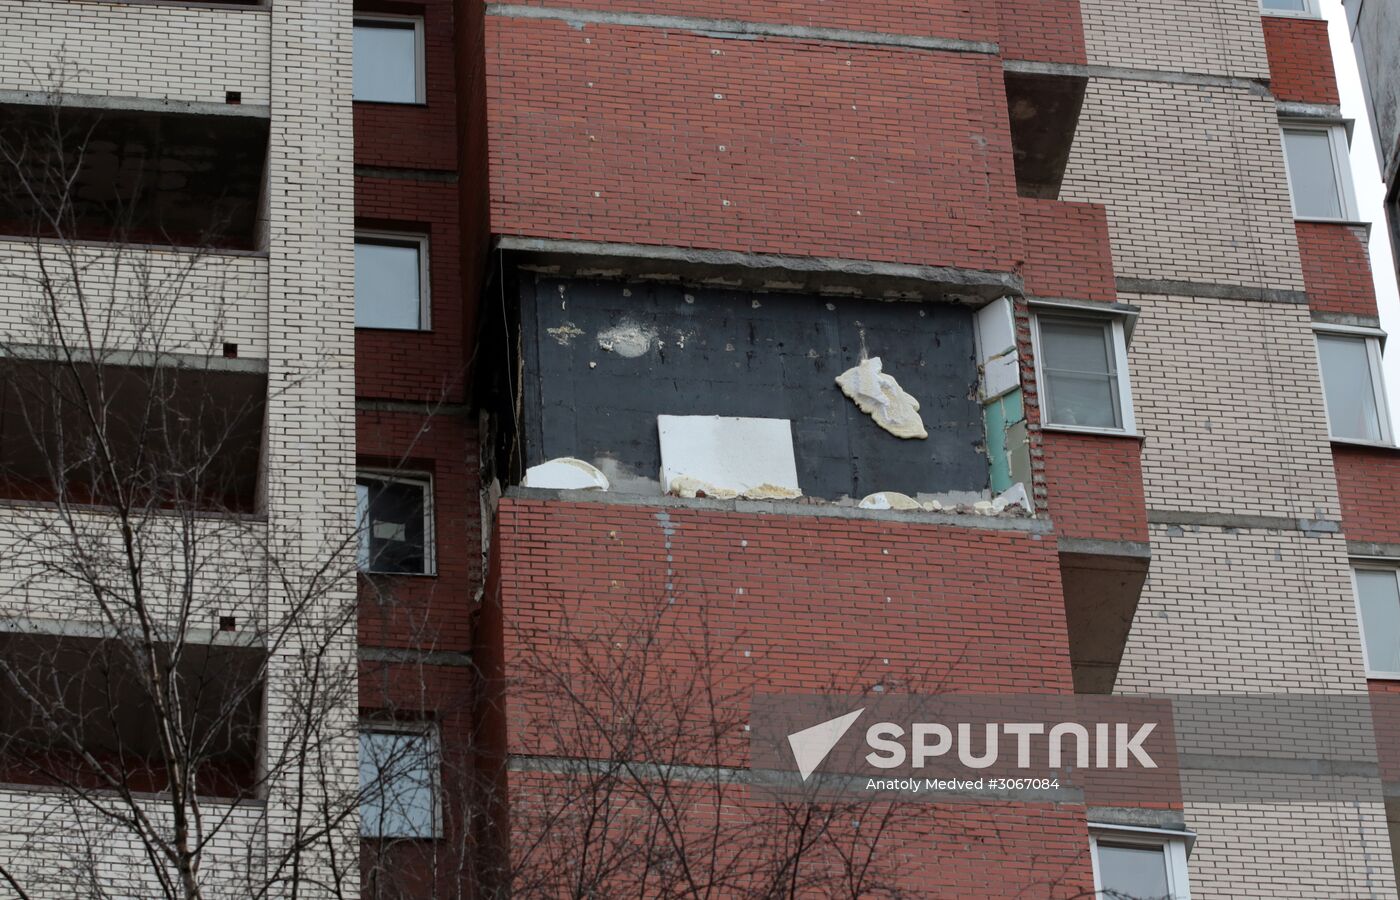 Emergency in residential building in eastern part of St. Petersburg